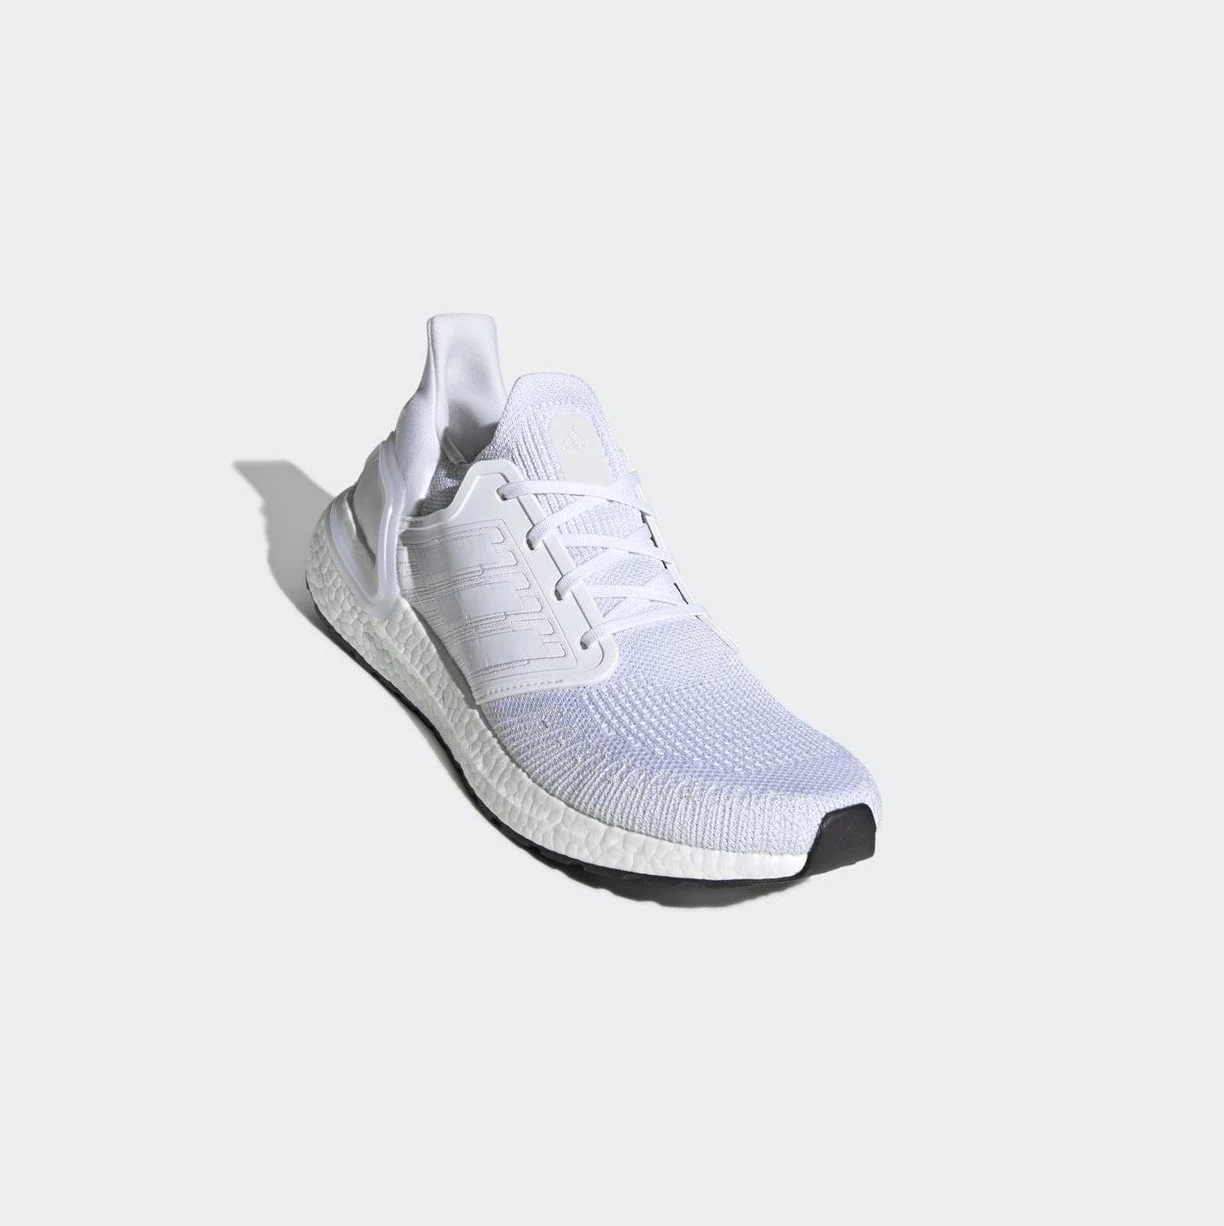 Bezecke Topanky Adidas Ultraboost 20 Panske Biele | 482SKNWLOAT